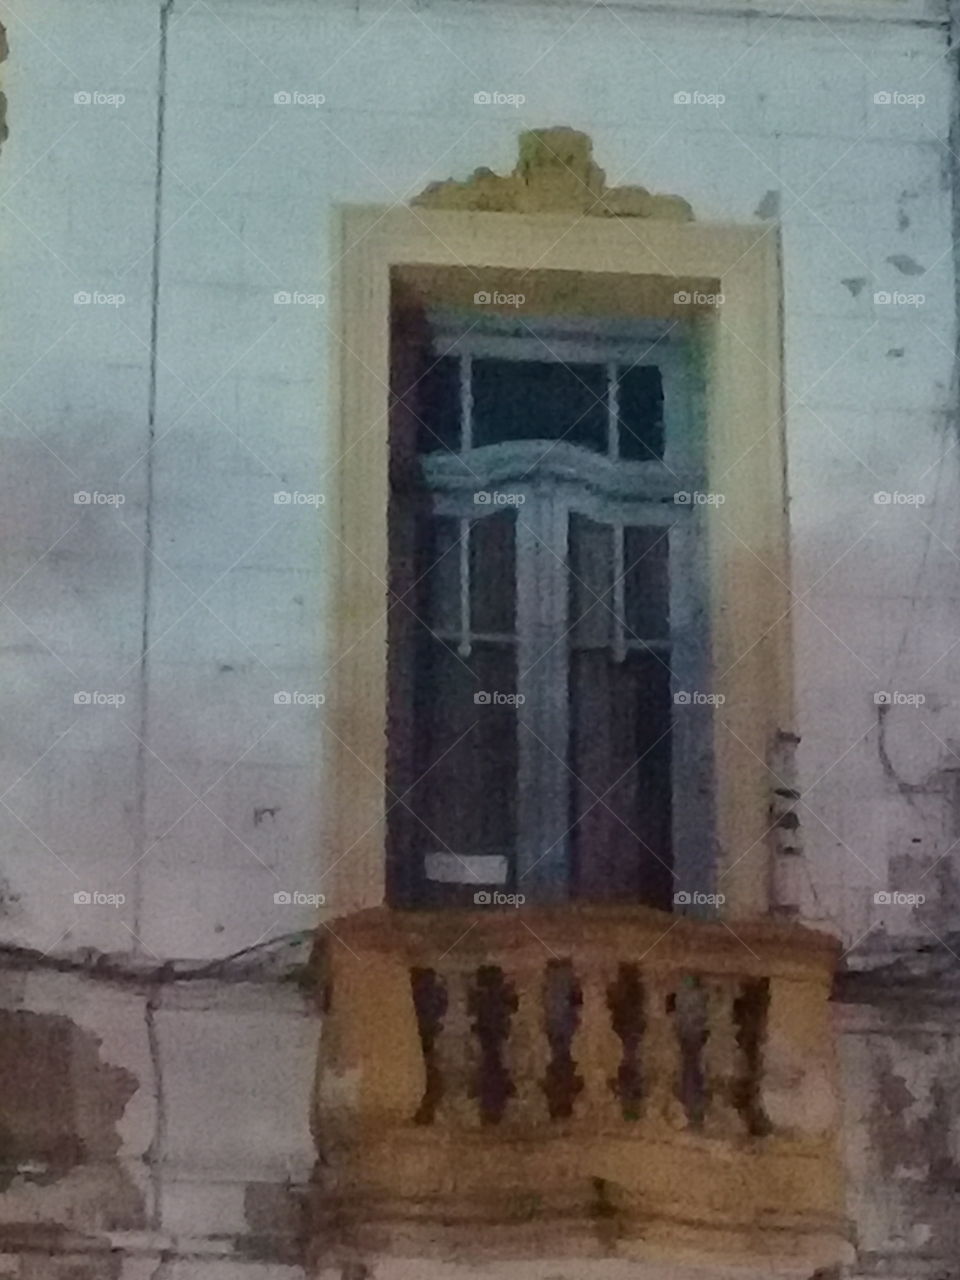 centenaria ventana con balcón y antigua celosía de madera entrecerrada, pintada de amarillo y verde.